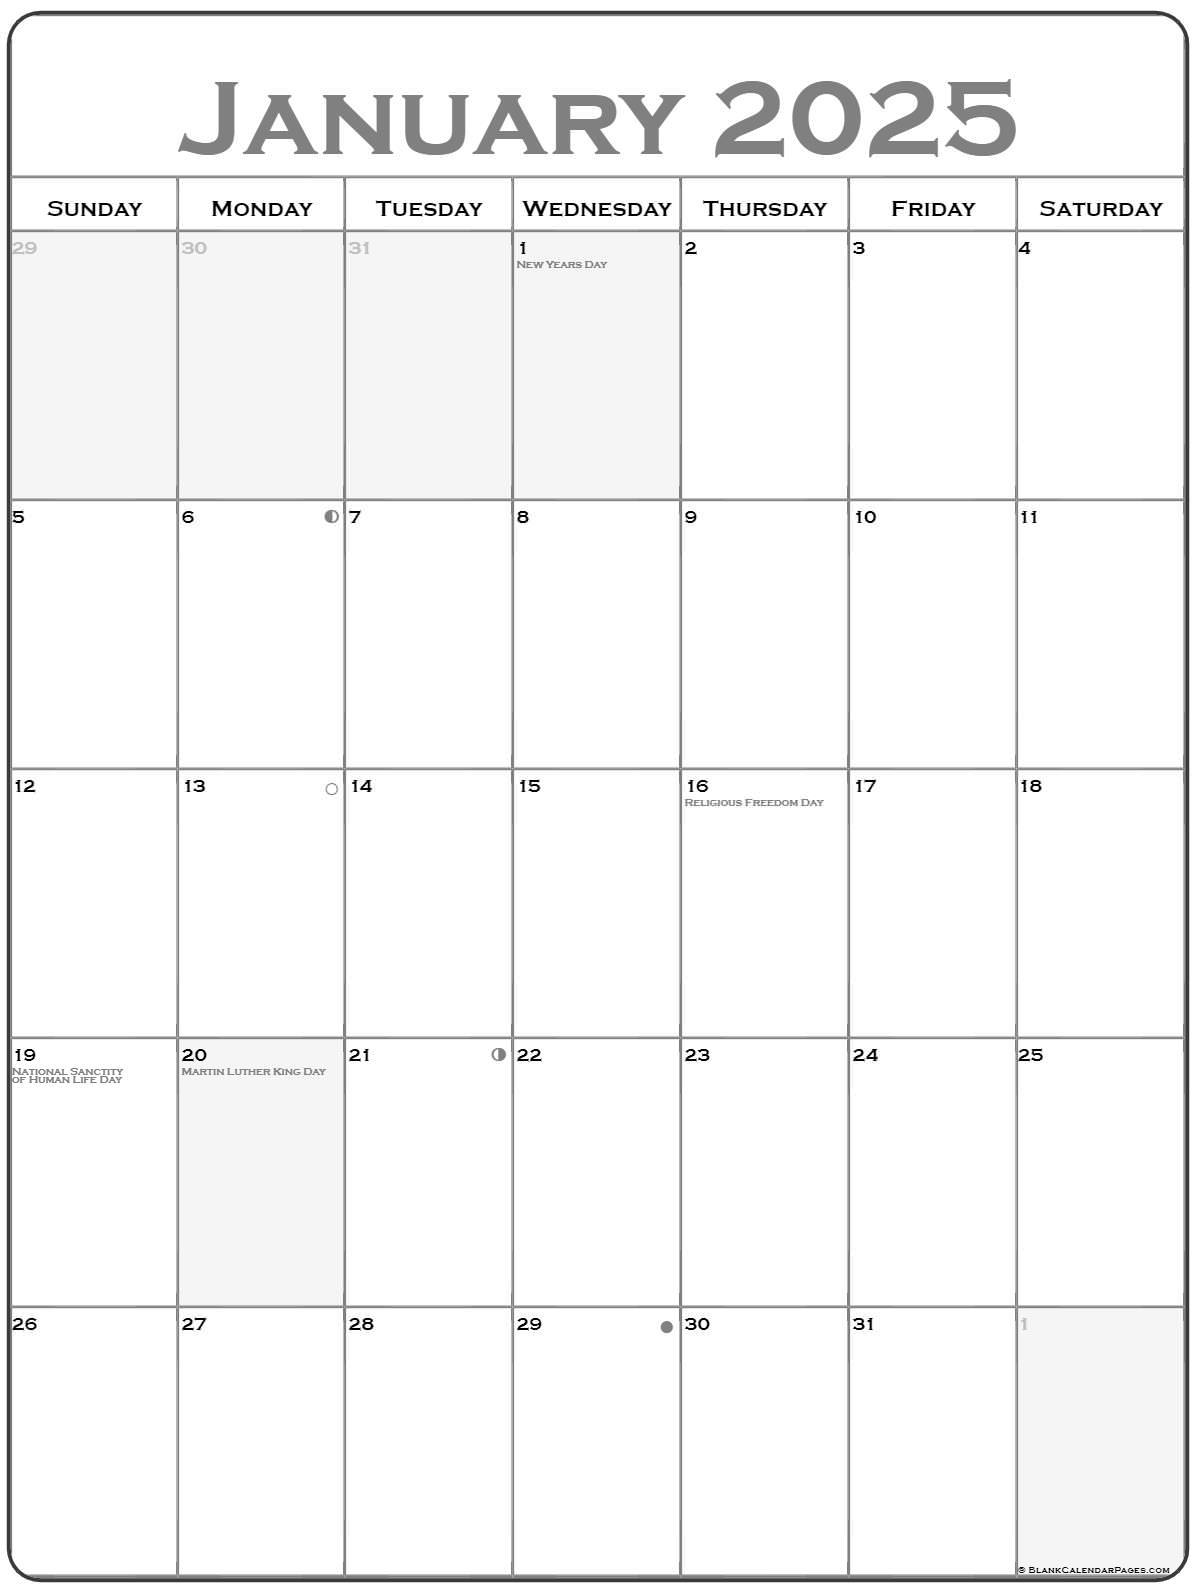 january-2025-calendar-printable-with-bank-holidays-uk